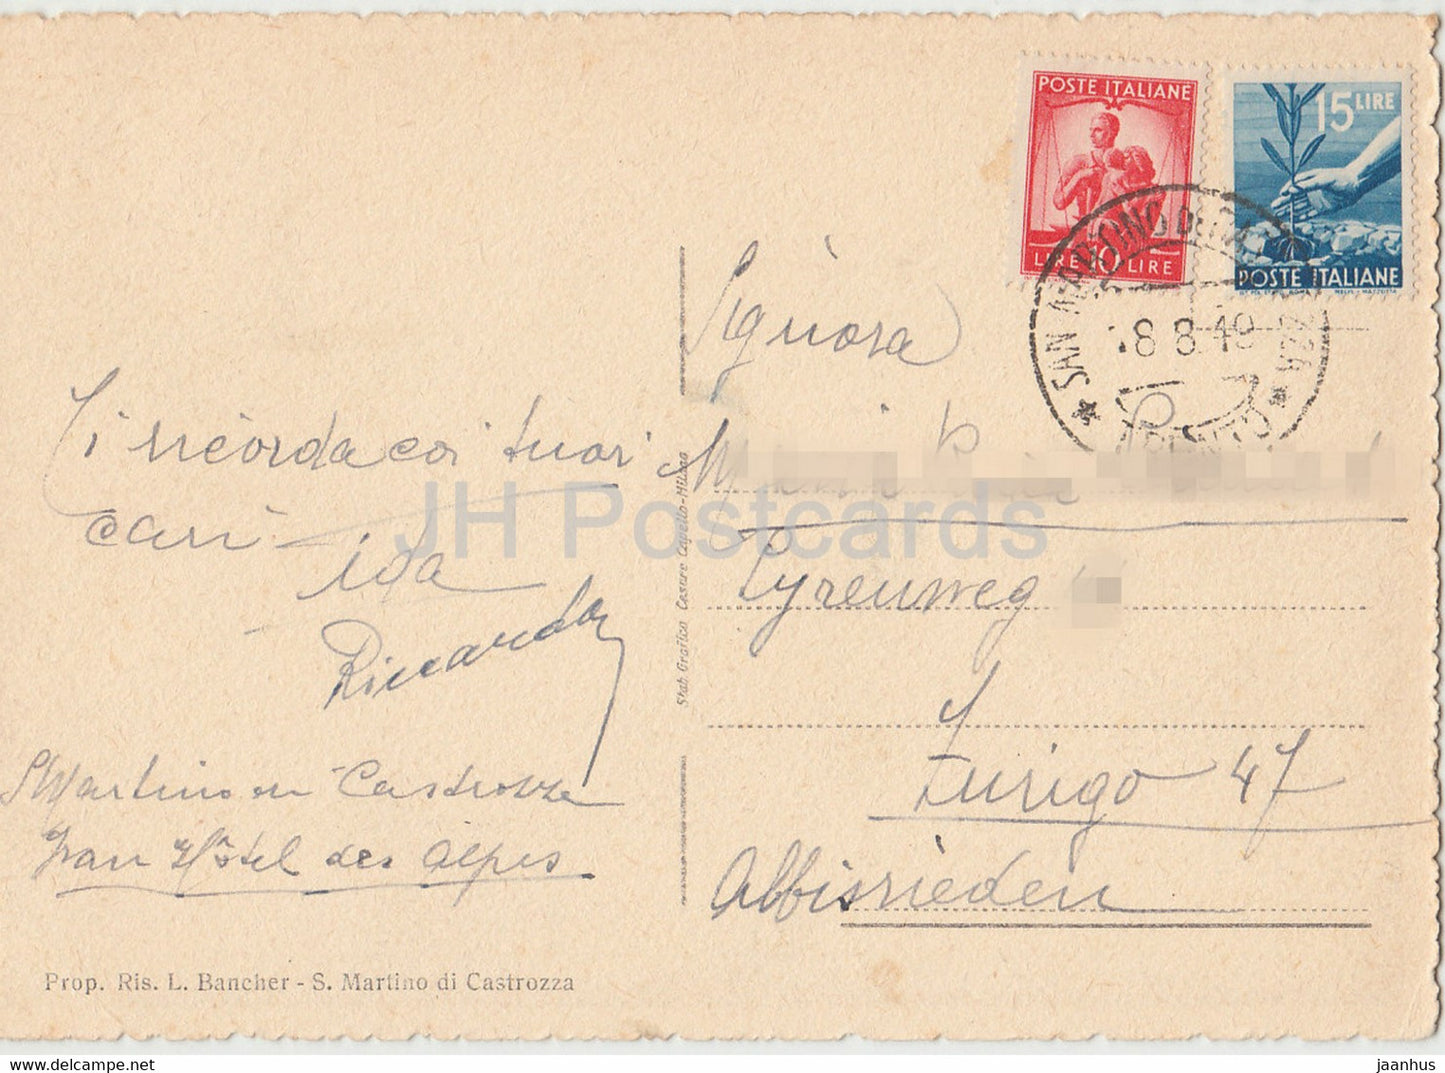 S Martino Di Castrozza 1444 m - Col Gruppo delle Pale - old postcard - 1949 - Italy - used